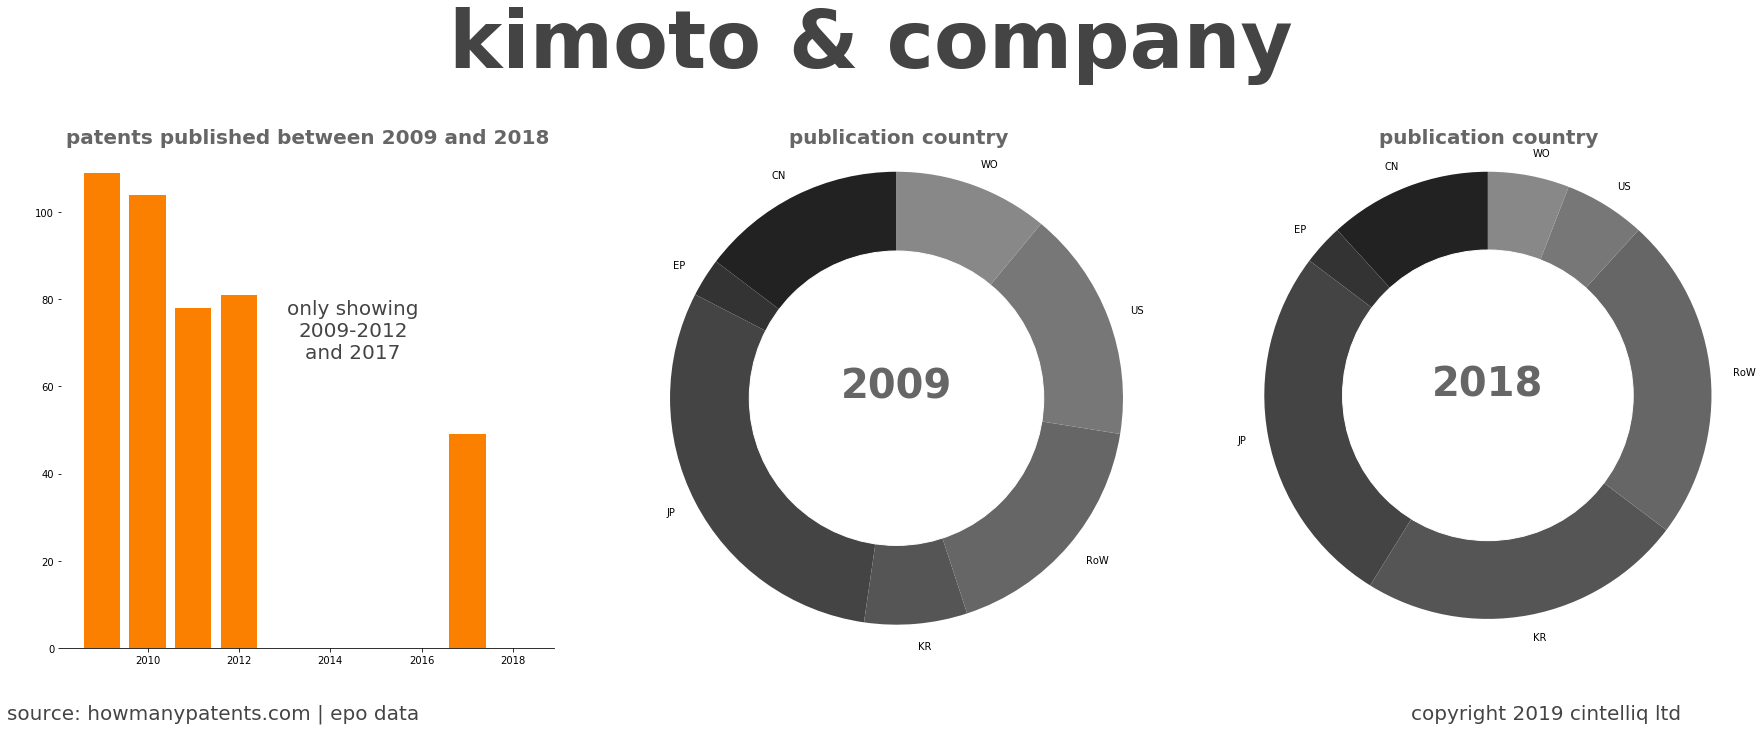 summary of patents for Kimoto & Company